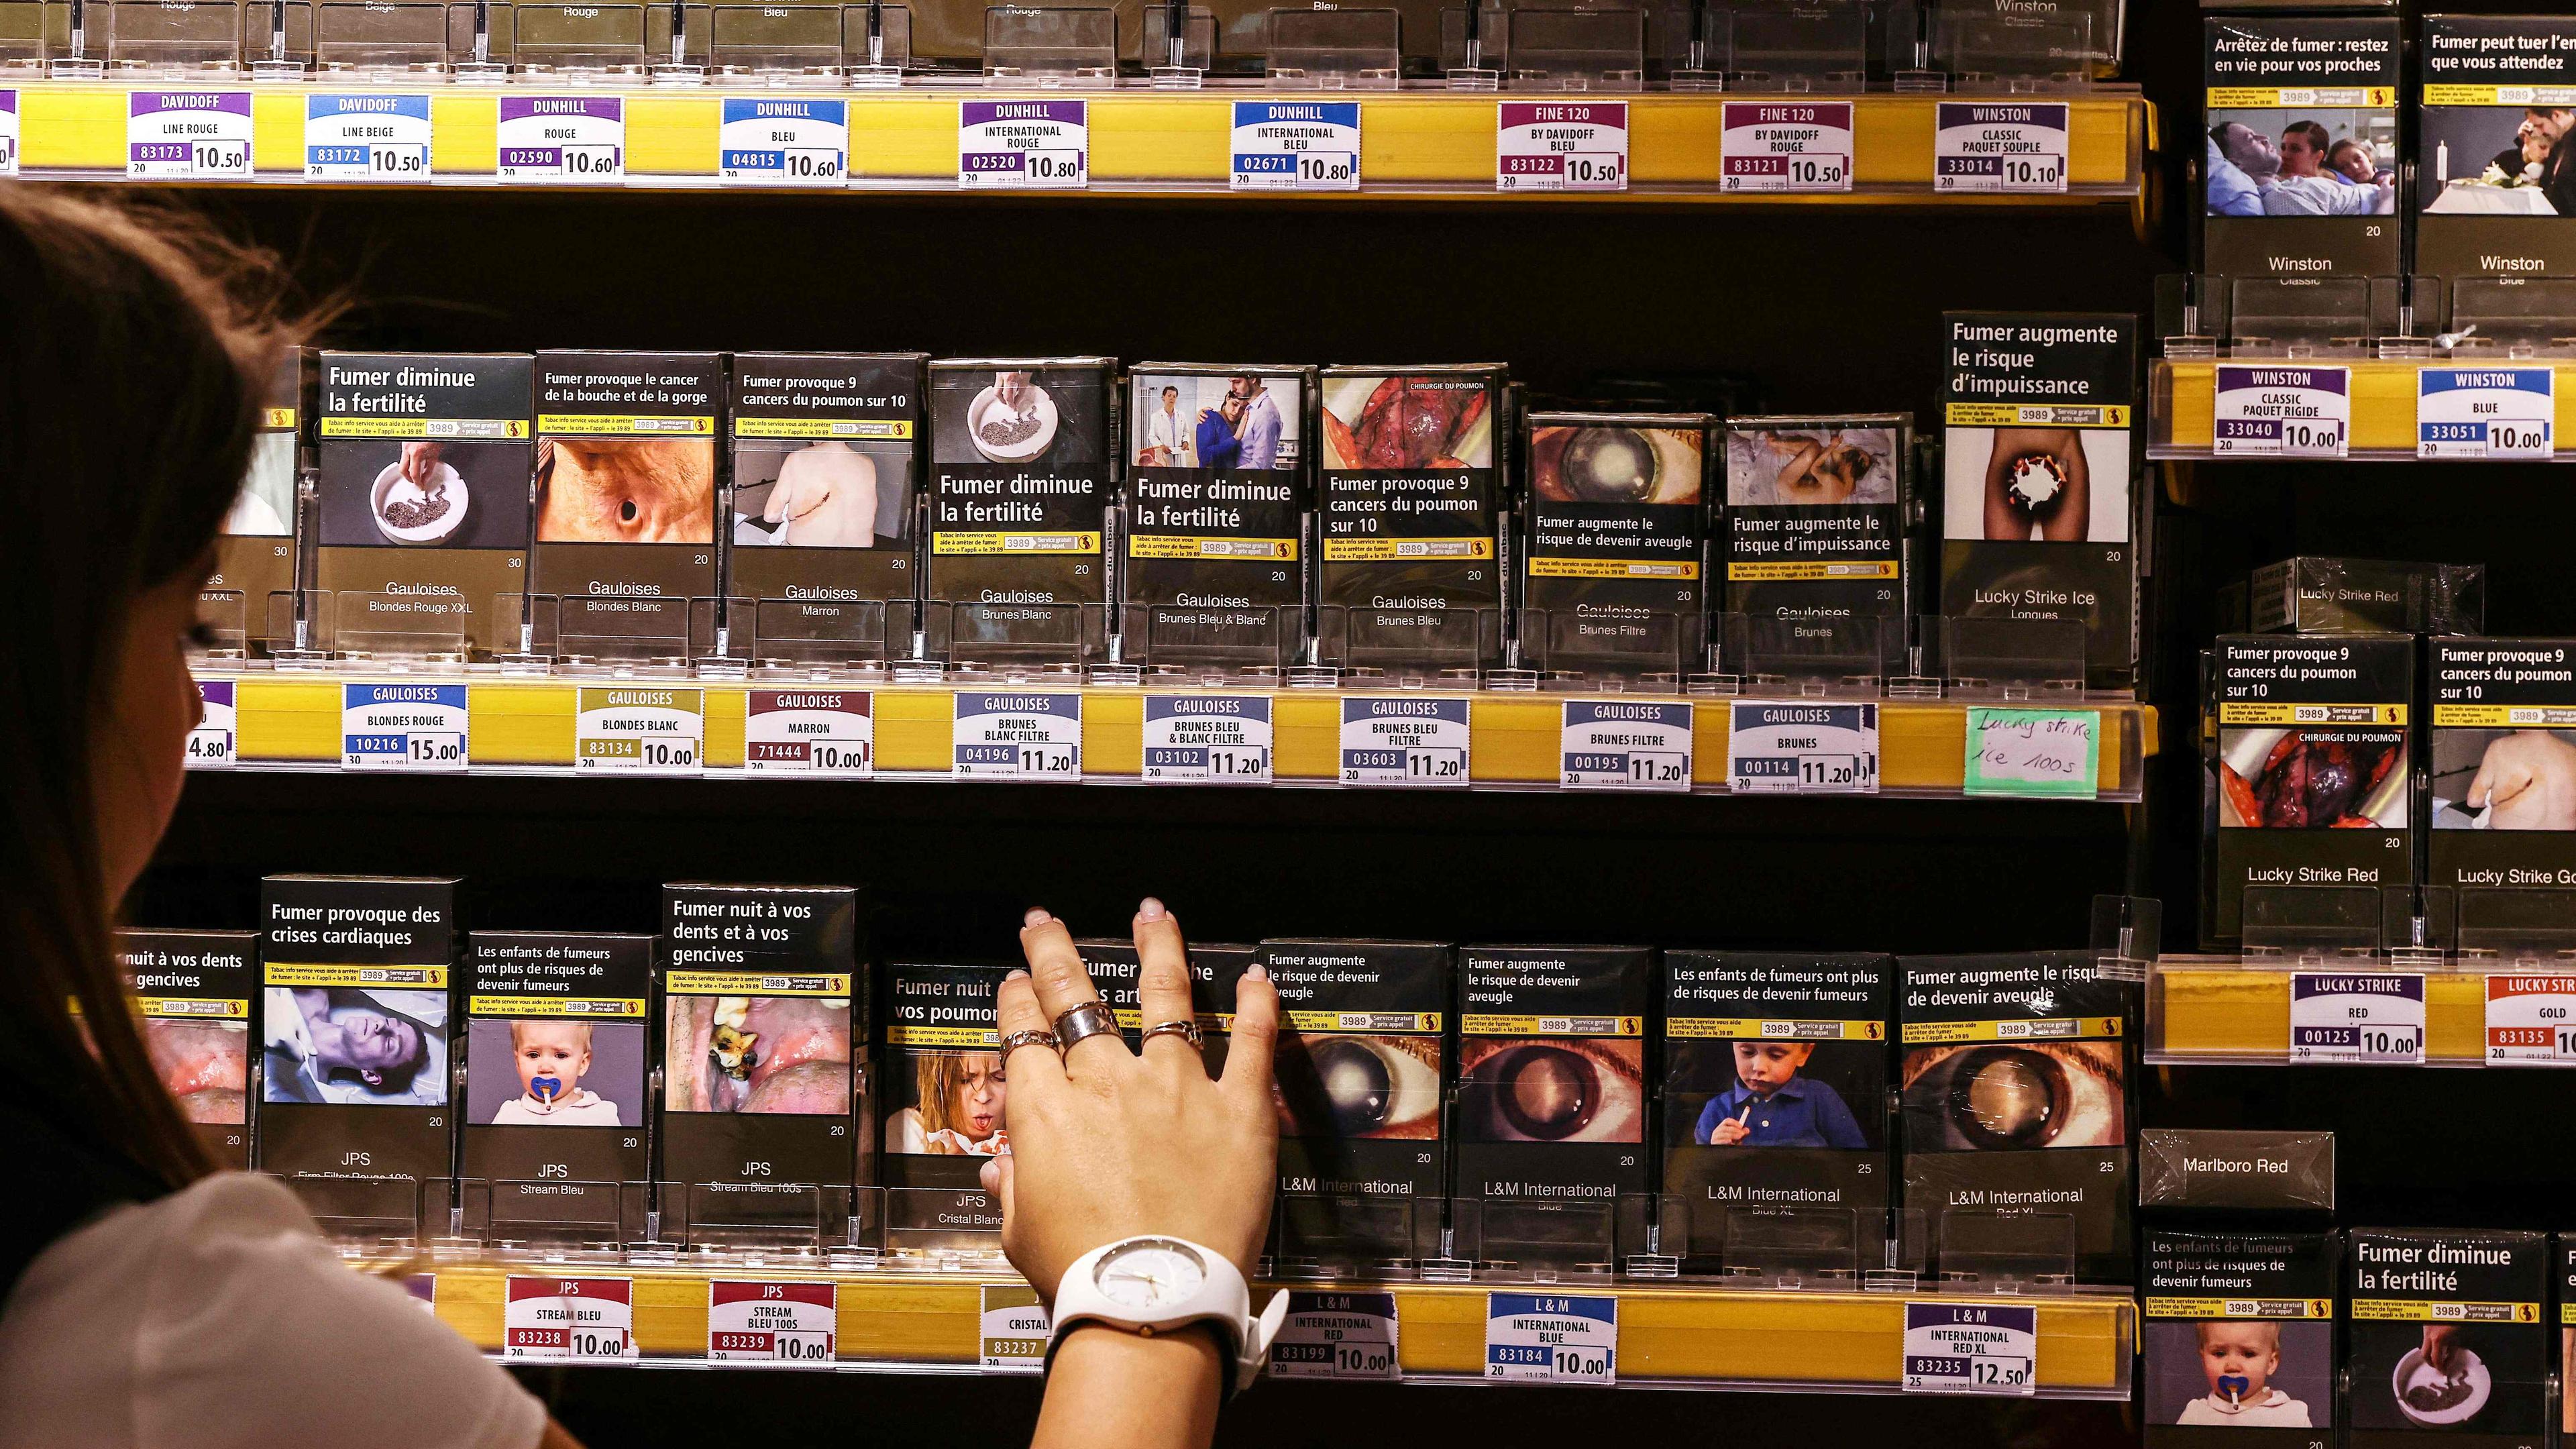 Die Preise für Zigaretten in Luxemburg werden um 10 Cent für eine 20er-Packung und um 30 Cent für eine 50g-Packung Drehtabak erhöht.